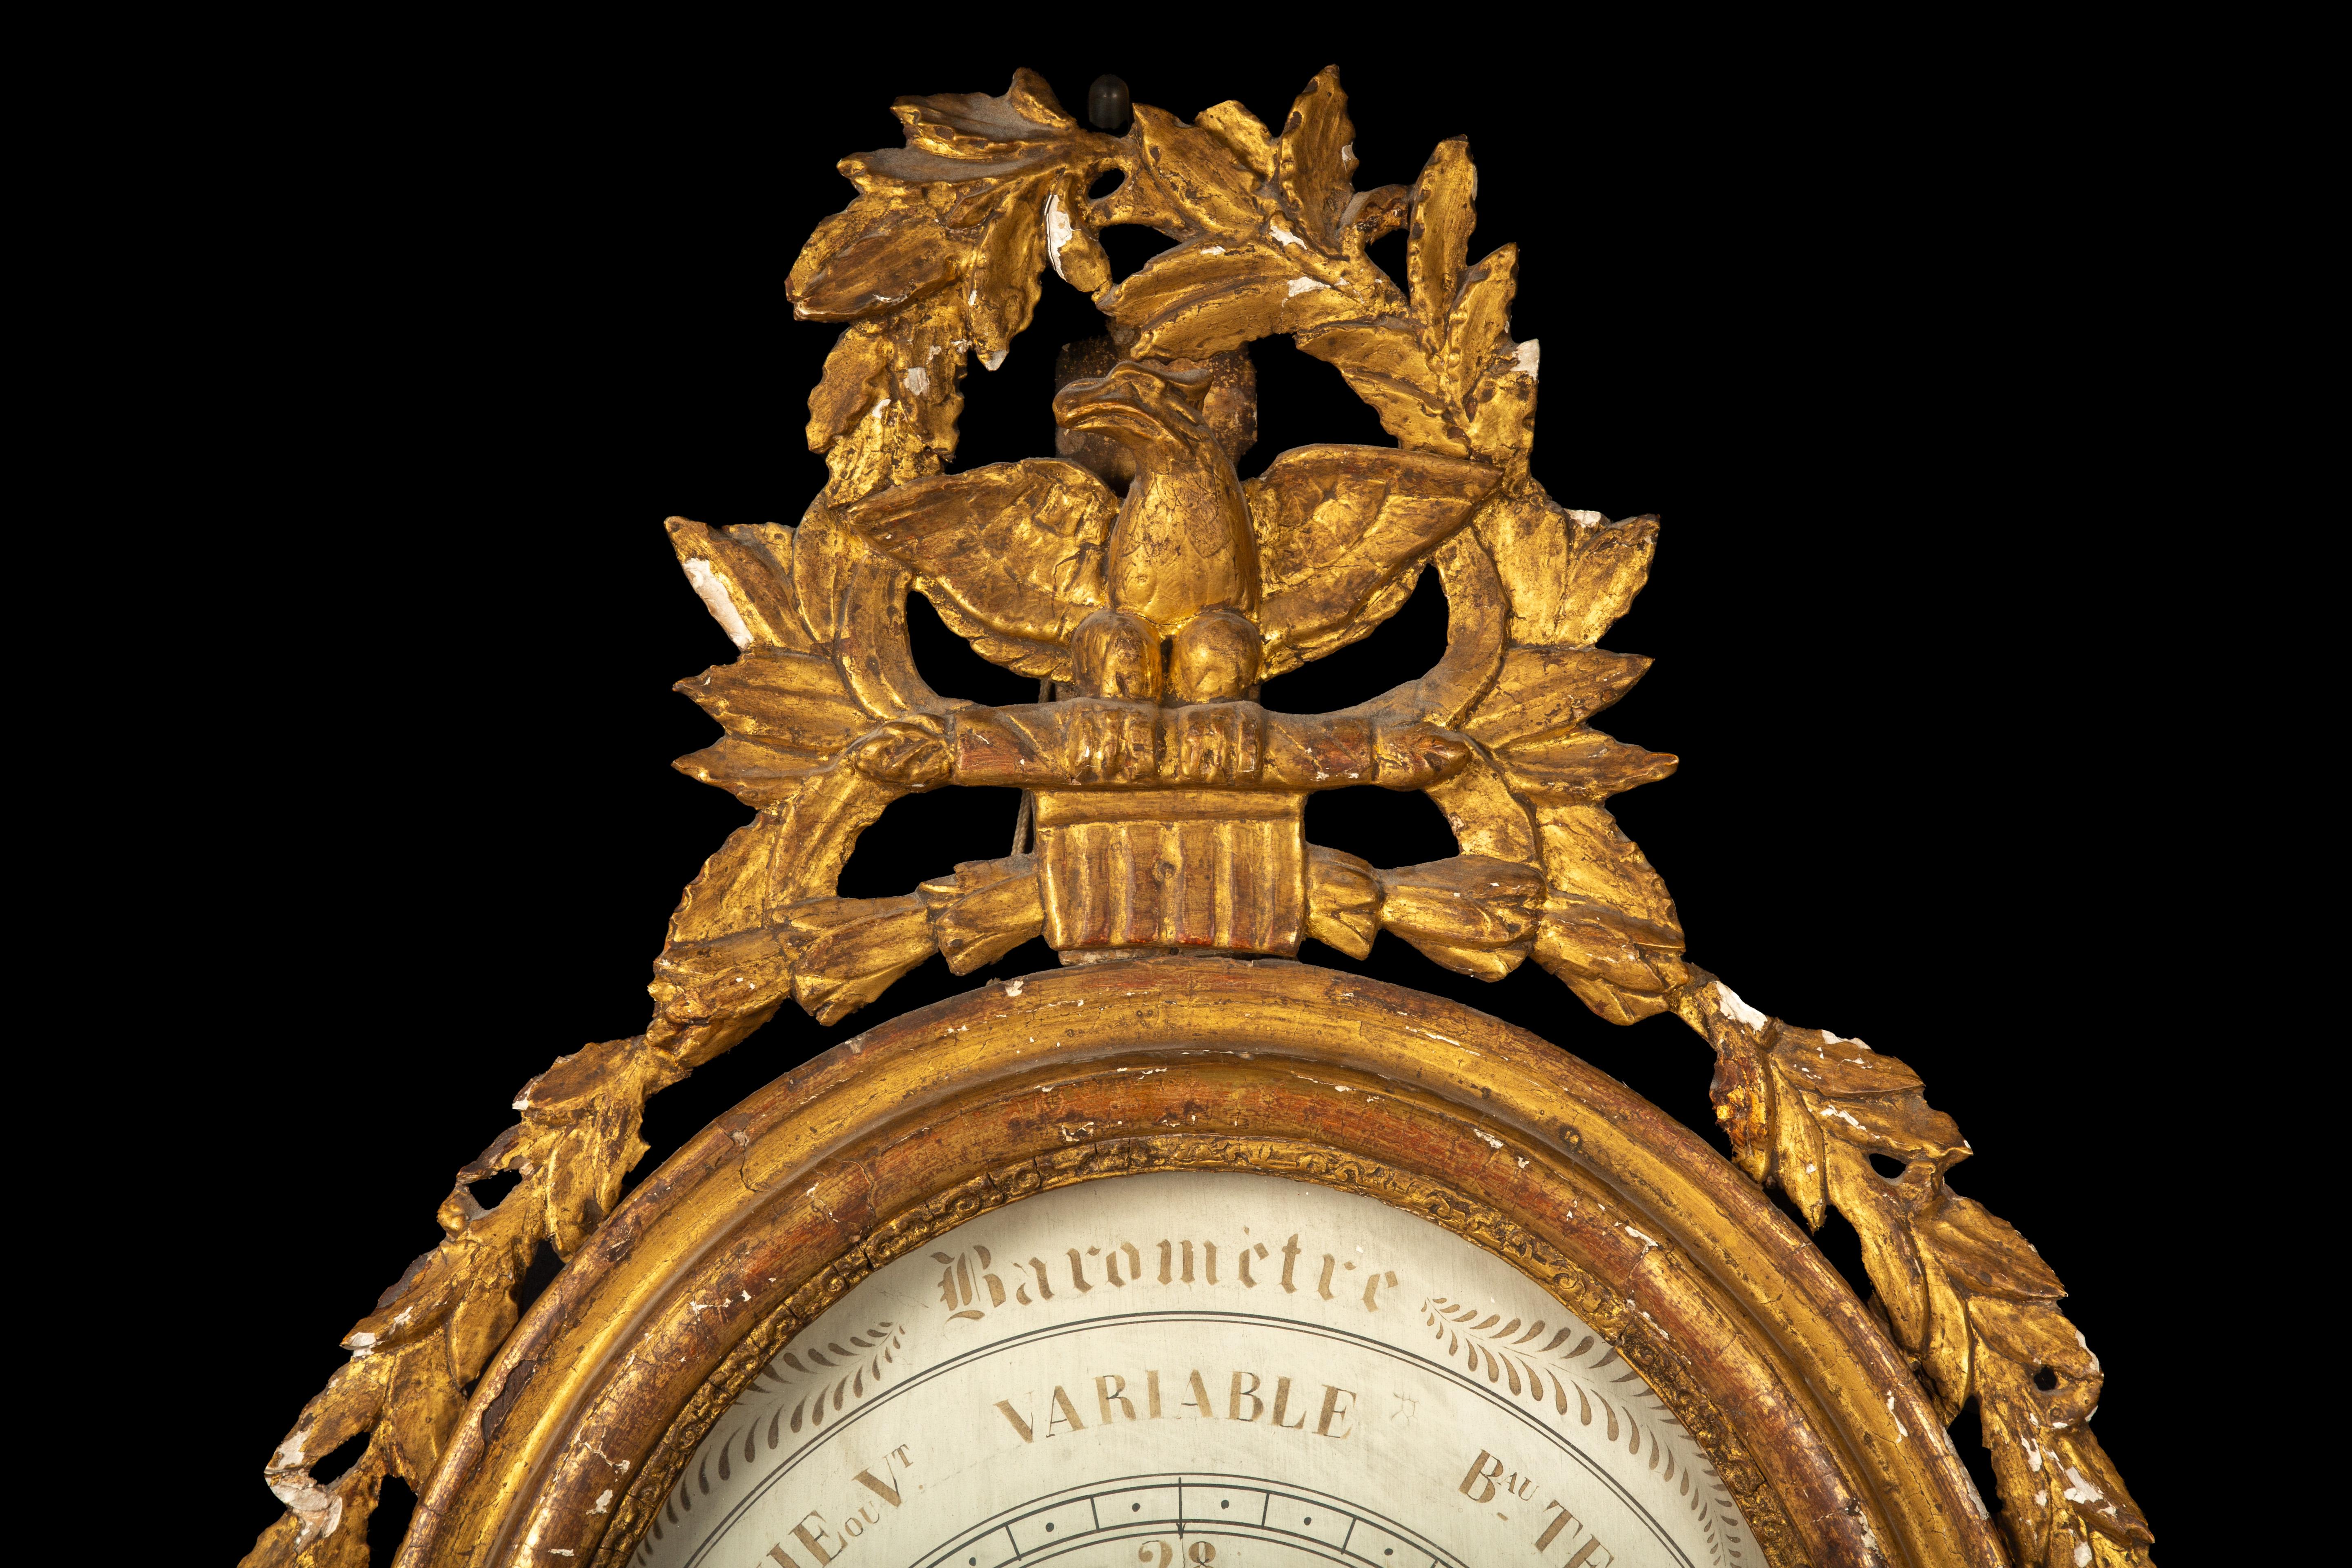 Empire Exquisite 1800 Parisian Mercury Barometer: Elegance in Science